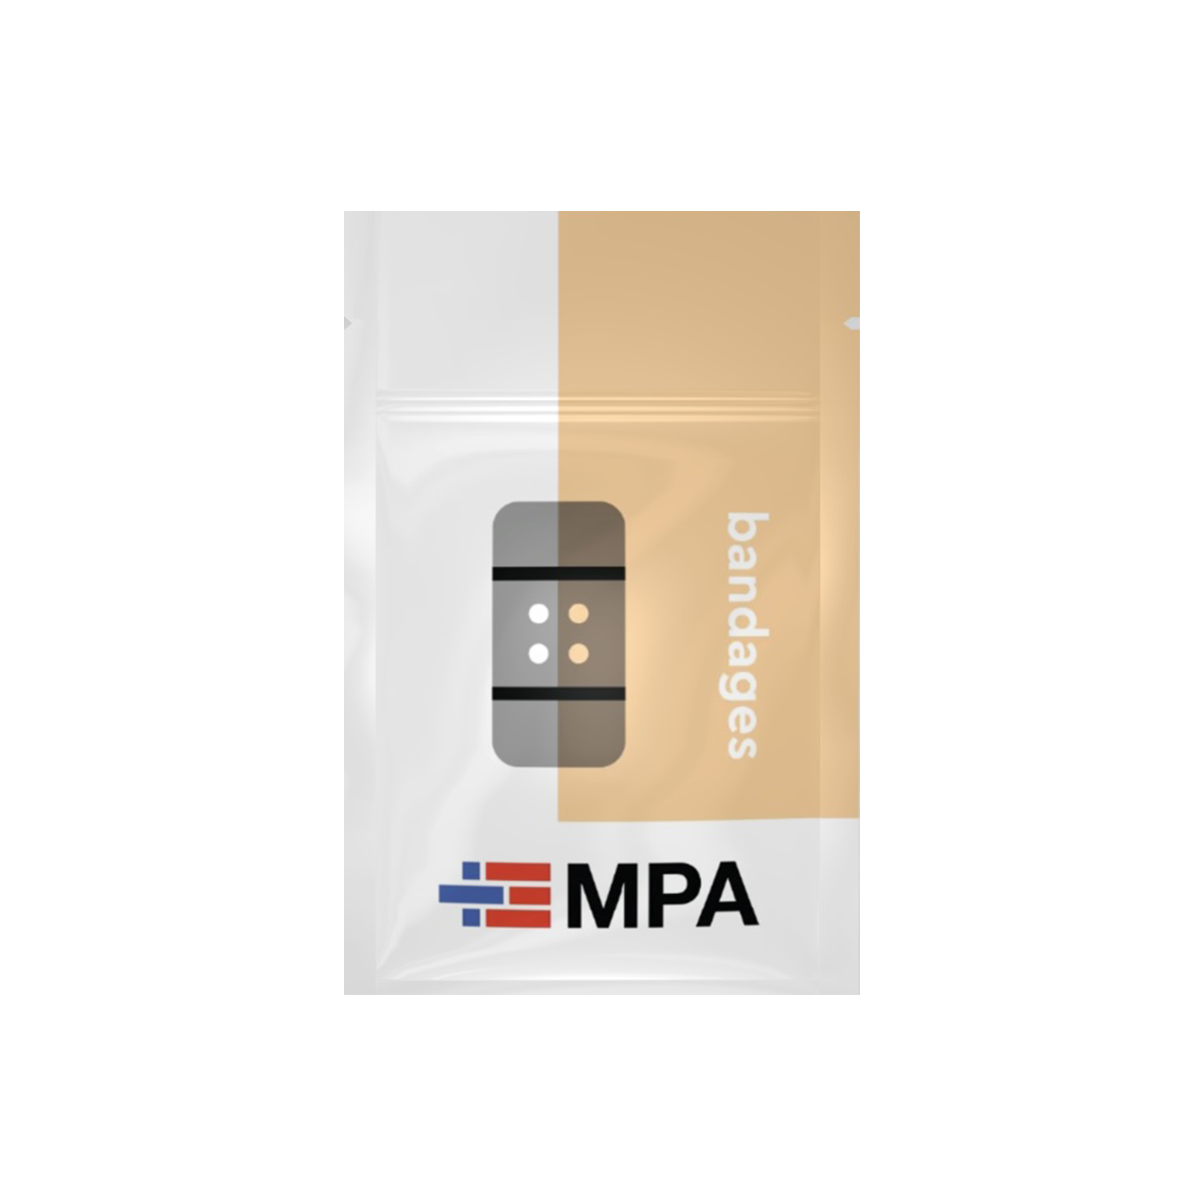 MPA Bandage Refill Kit